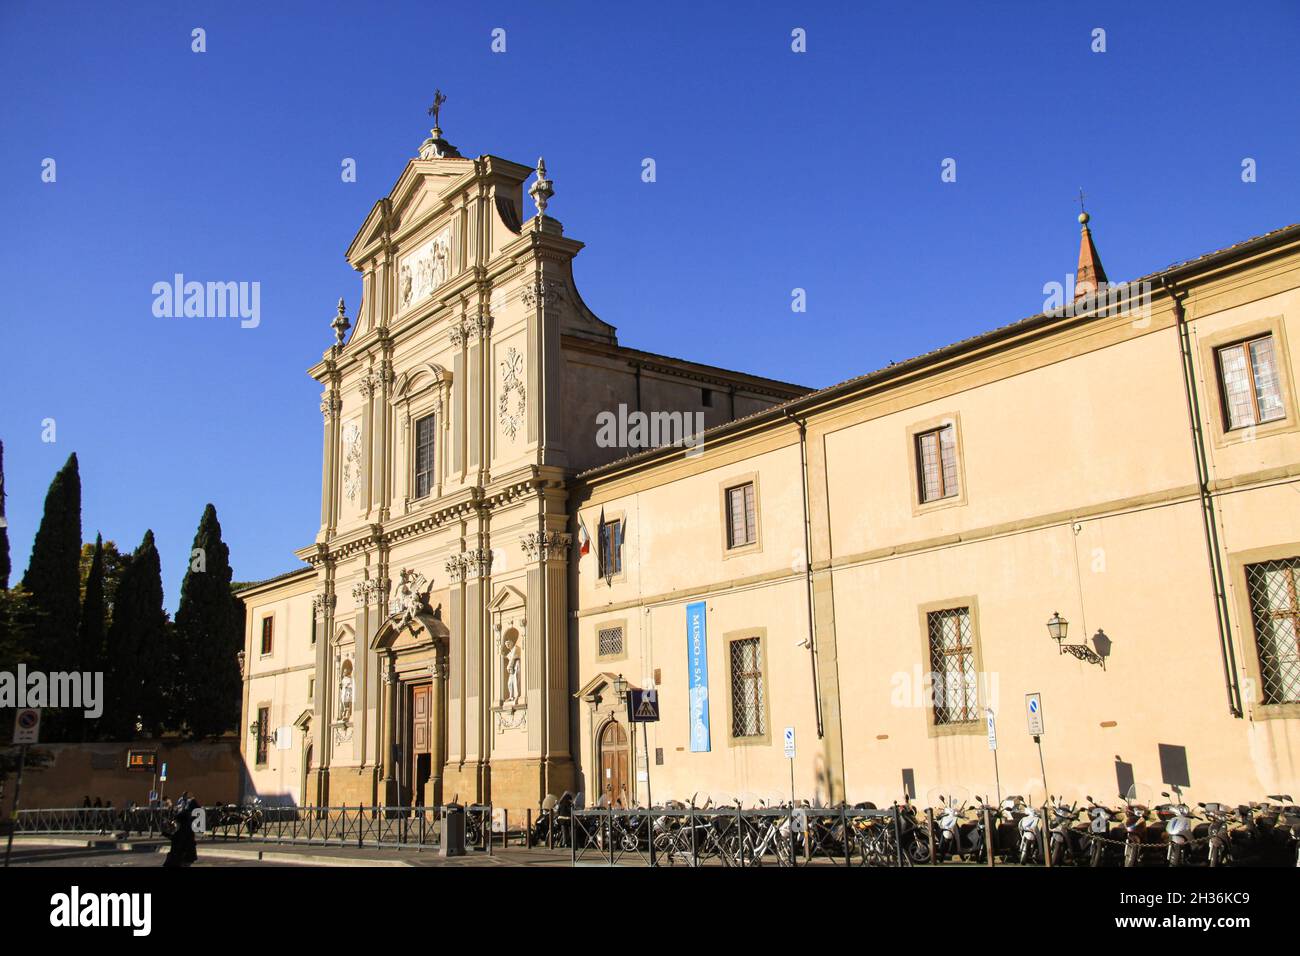 San Marco Kirche in Florenz, Italien. Historisches Zentrum mit Basilica di San Marco - St Mark english - Kirche, Kloster und Museo Nazionale mit blauen sk Stockfoto